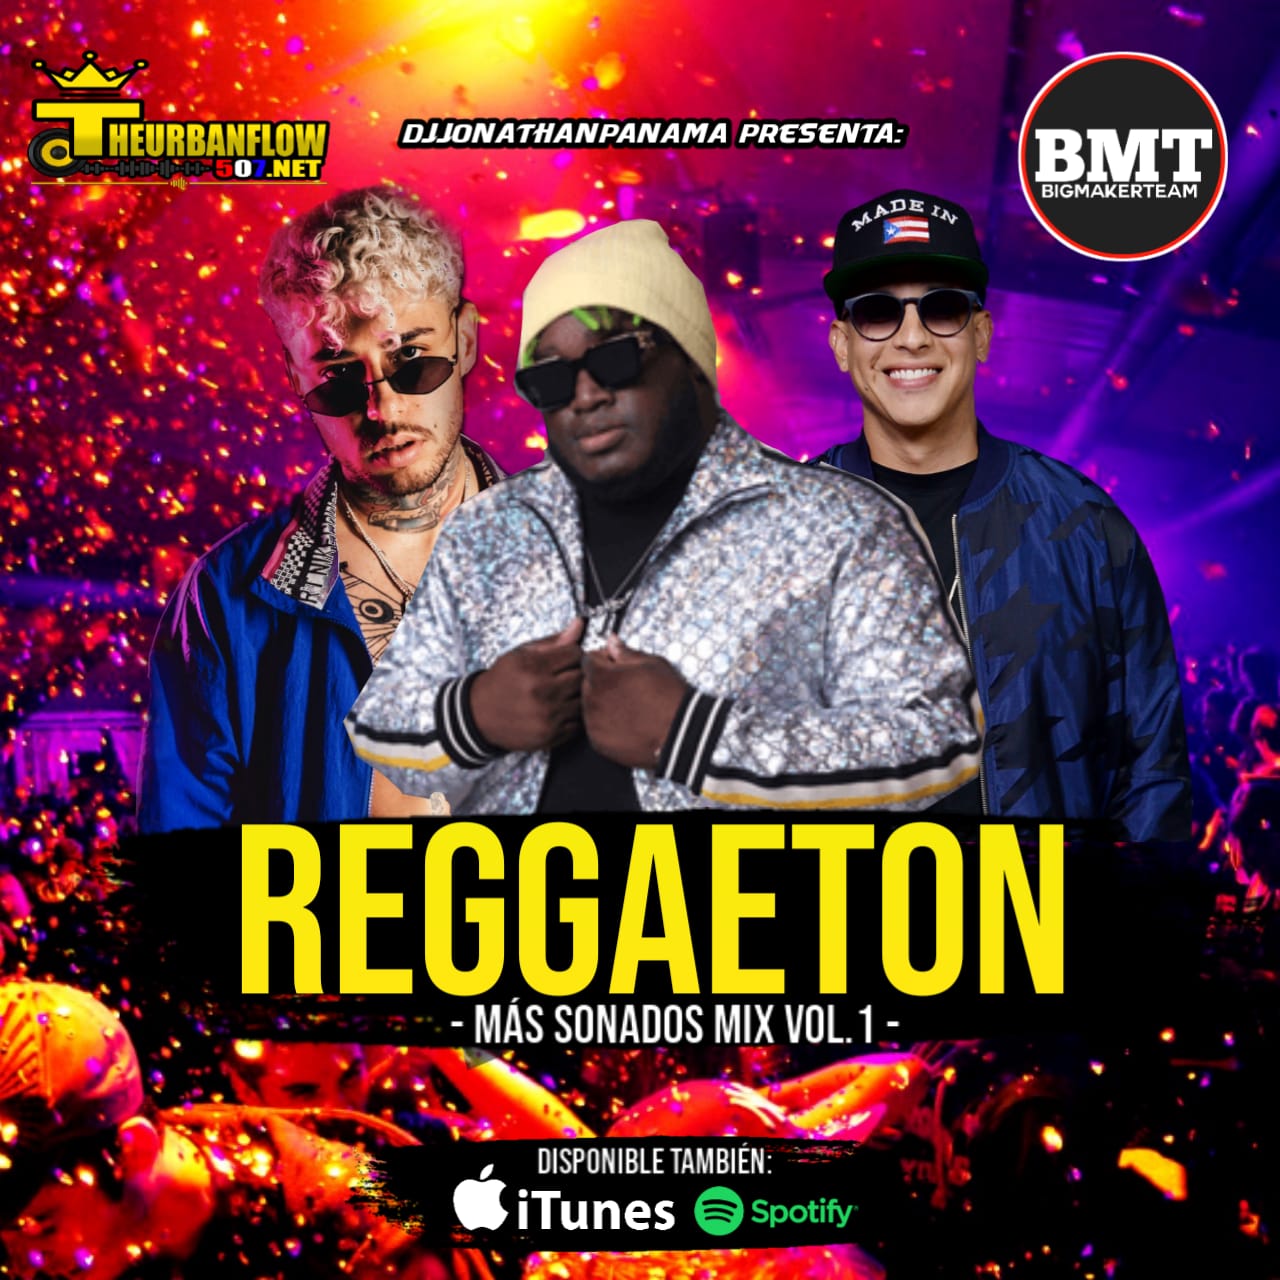 Reggaeton mix 2020 (los mas sonados) - @DjJonathanPanama